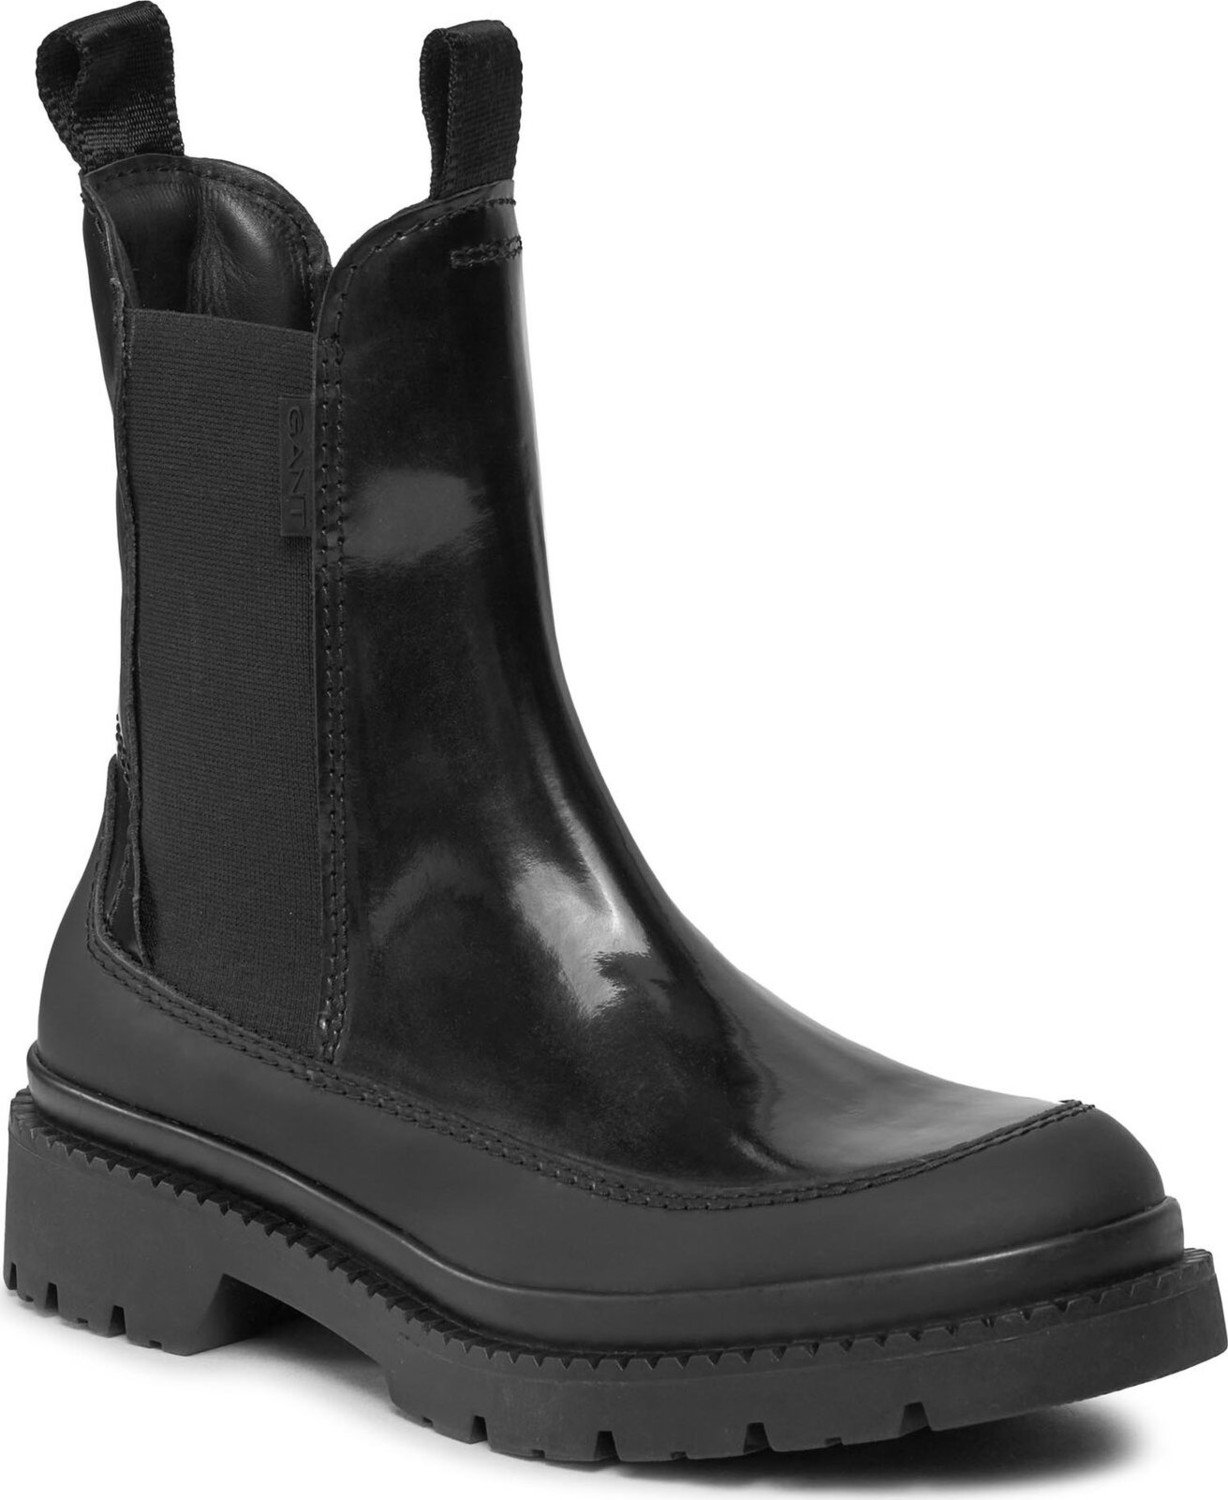 Kotníková obuv s elastickým prvkem Gant Prepnovo Chelsea Boot 27551365 Black